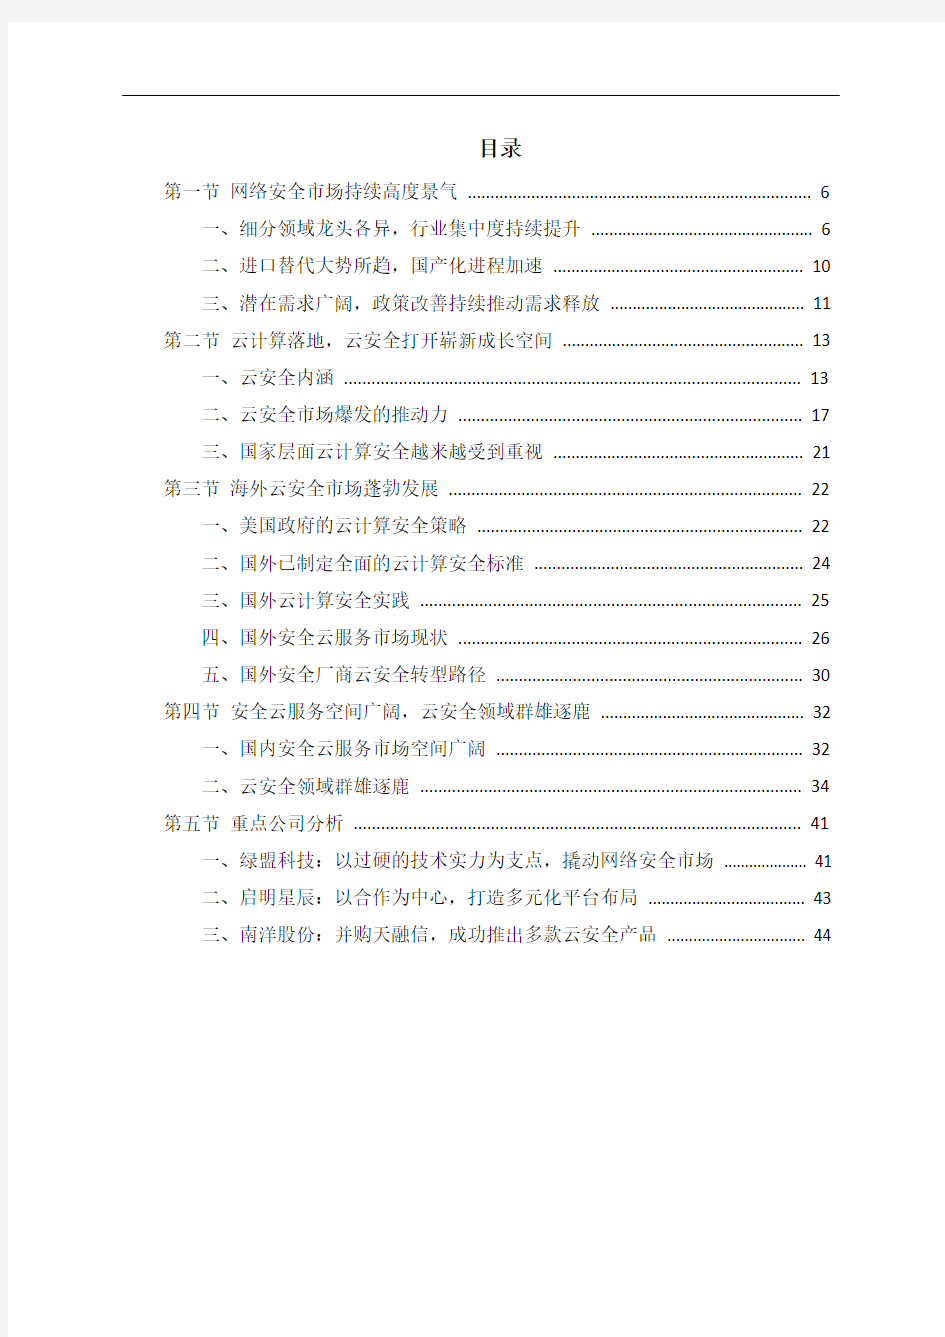 中国网络安全市场调研分析报告